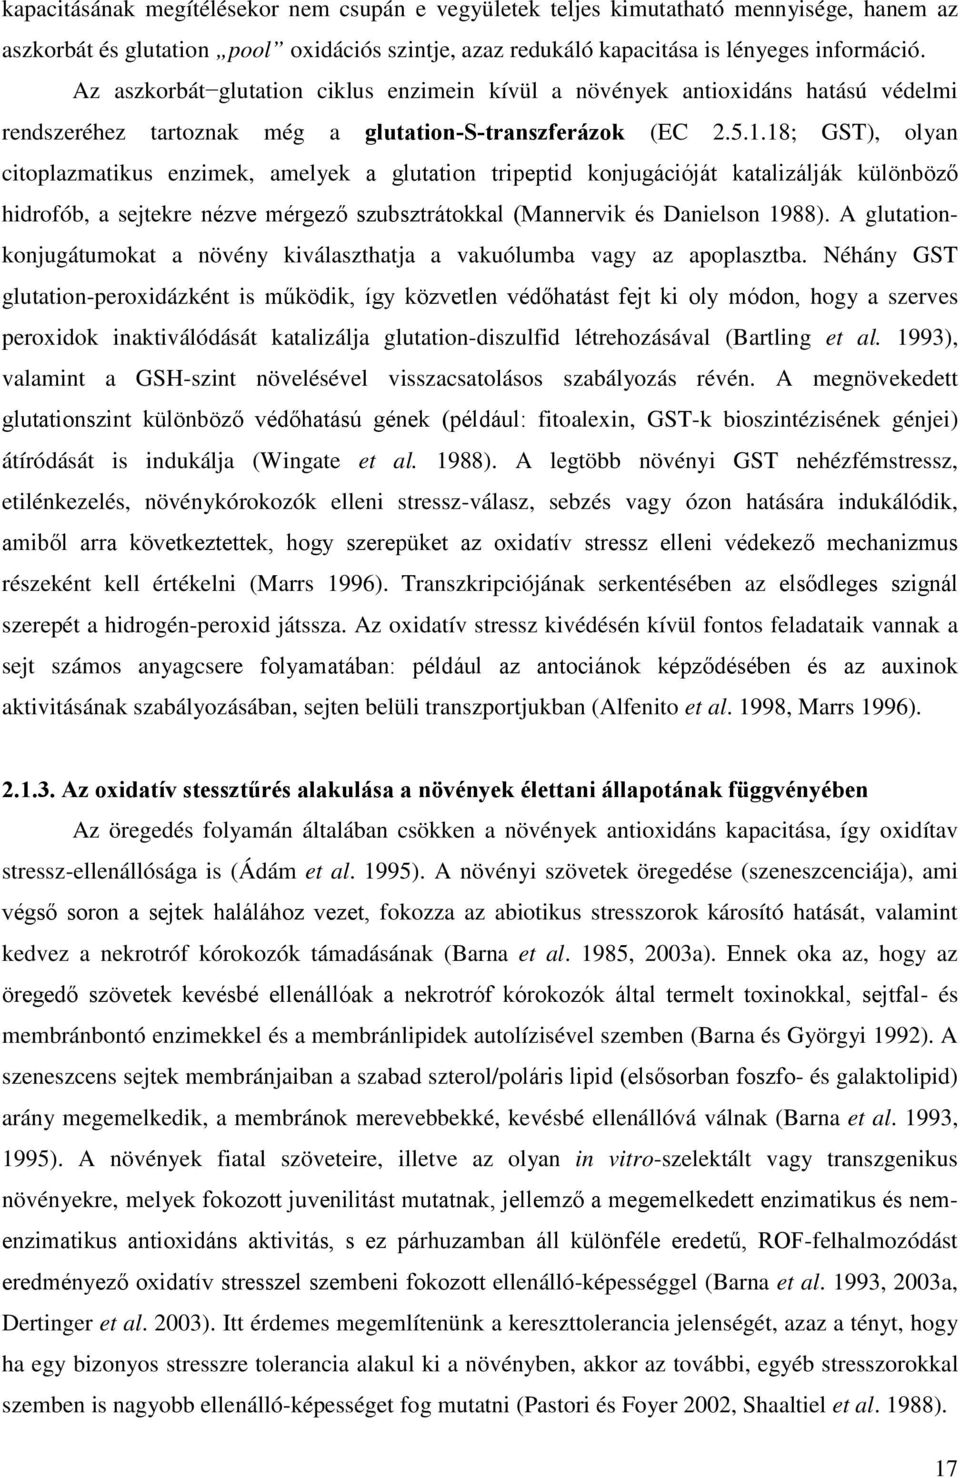 18; GST), olyan citoplazmatikus enzimek, amelyek a glutation tripeptid konjugációját katalizálják különböző hidrofób, a sejtekre nézve mérgező szubsztrátokkal (Mannervik és Danielson 1988).